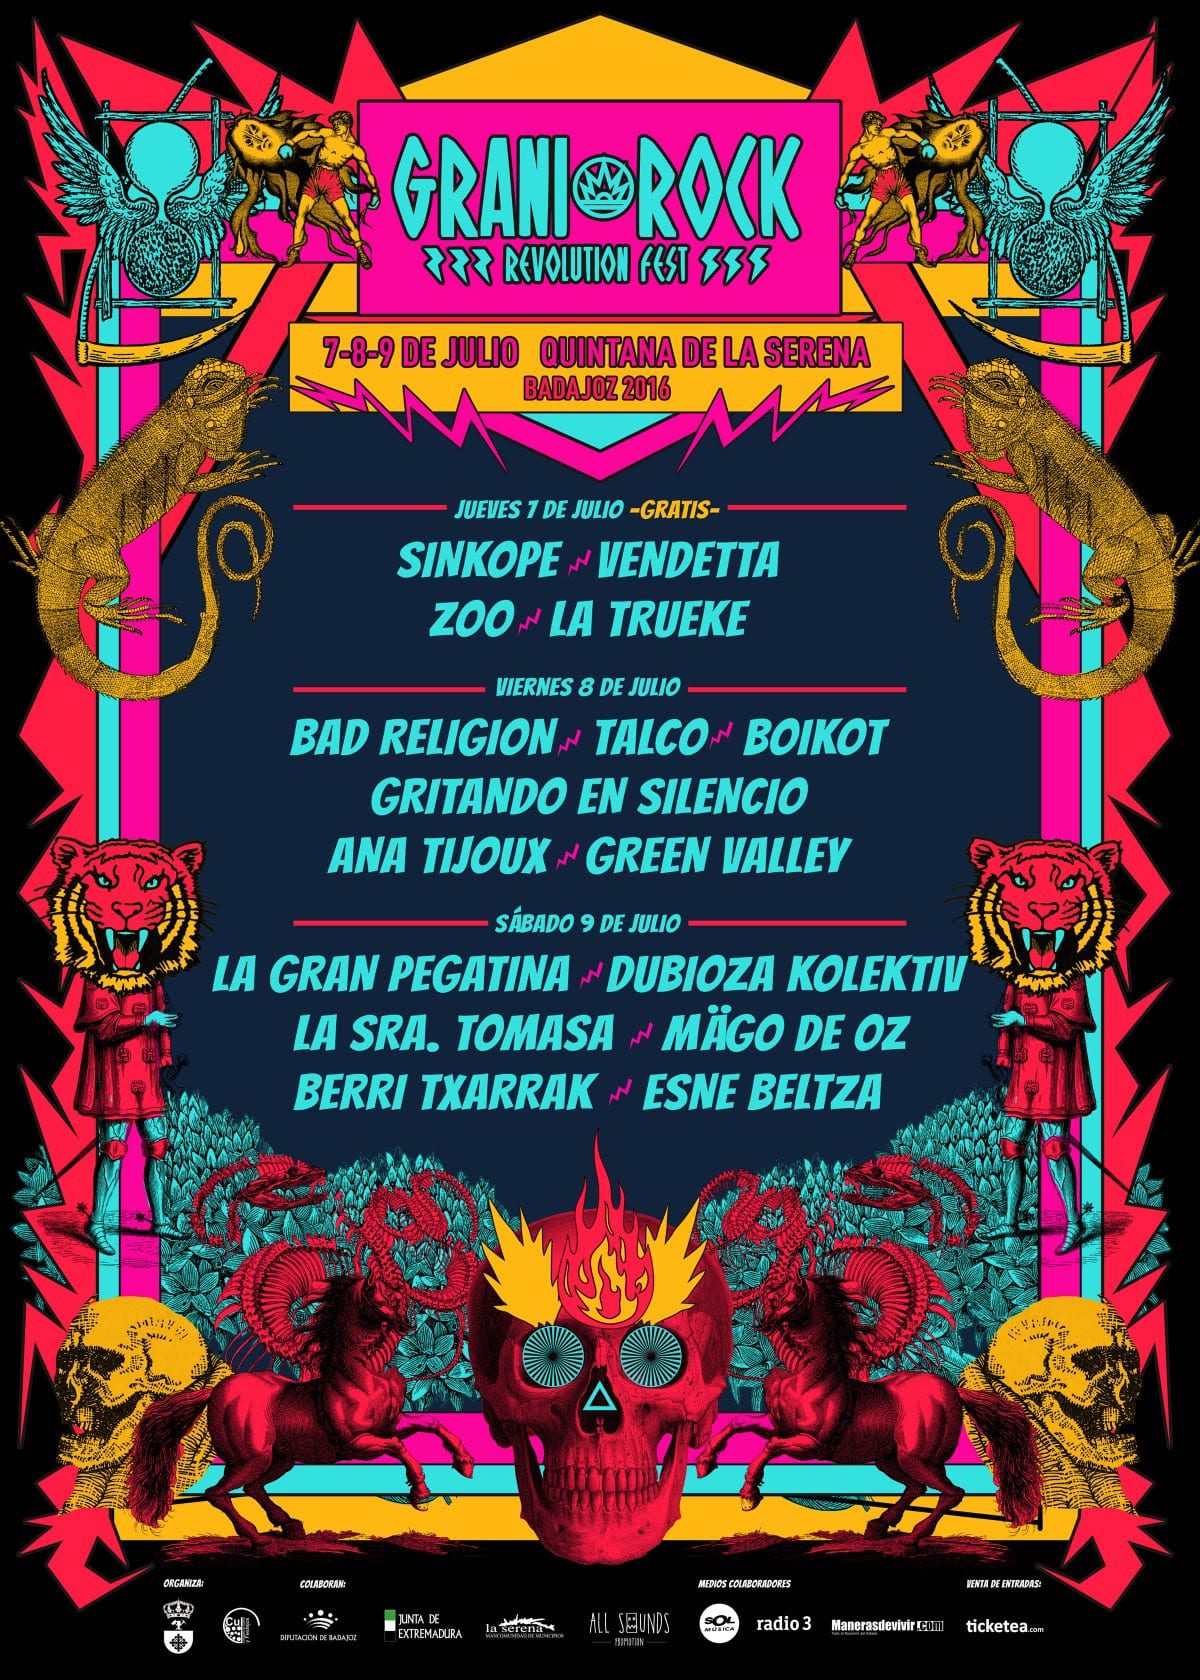 El festival Granirock anuncia su distribución de artistas por días